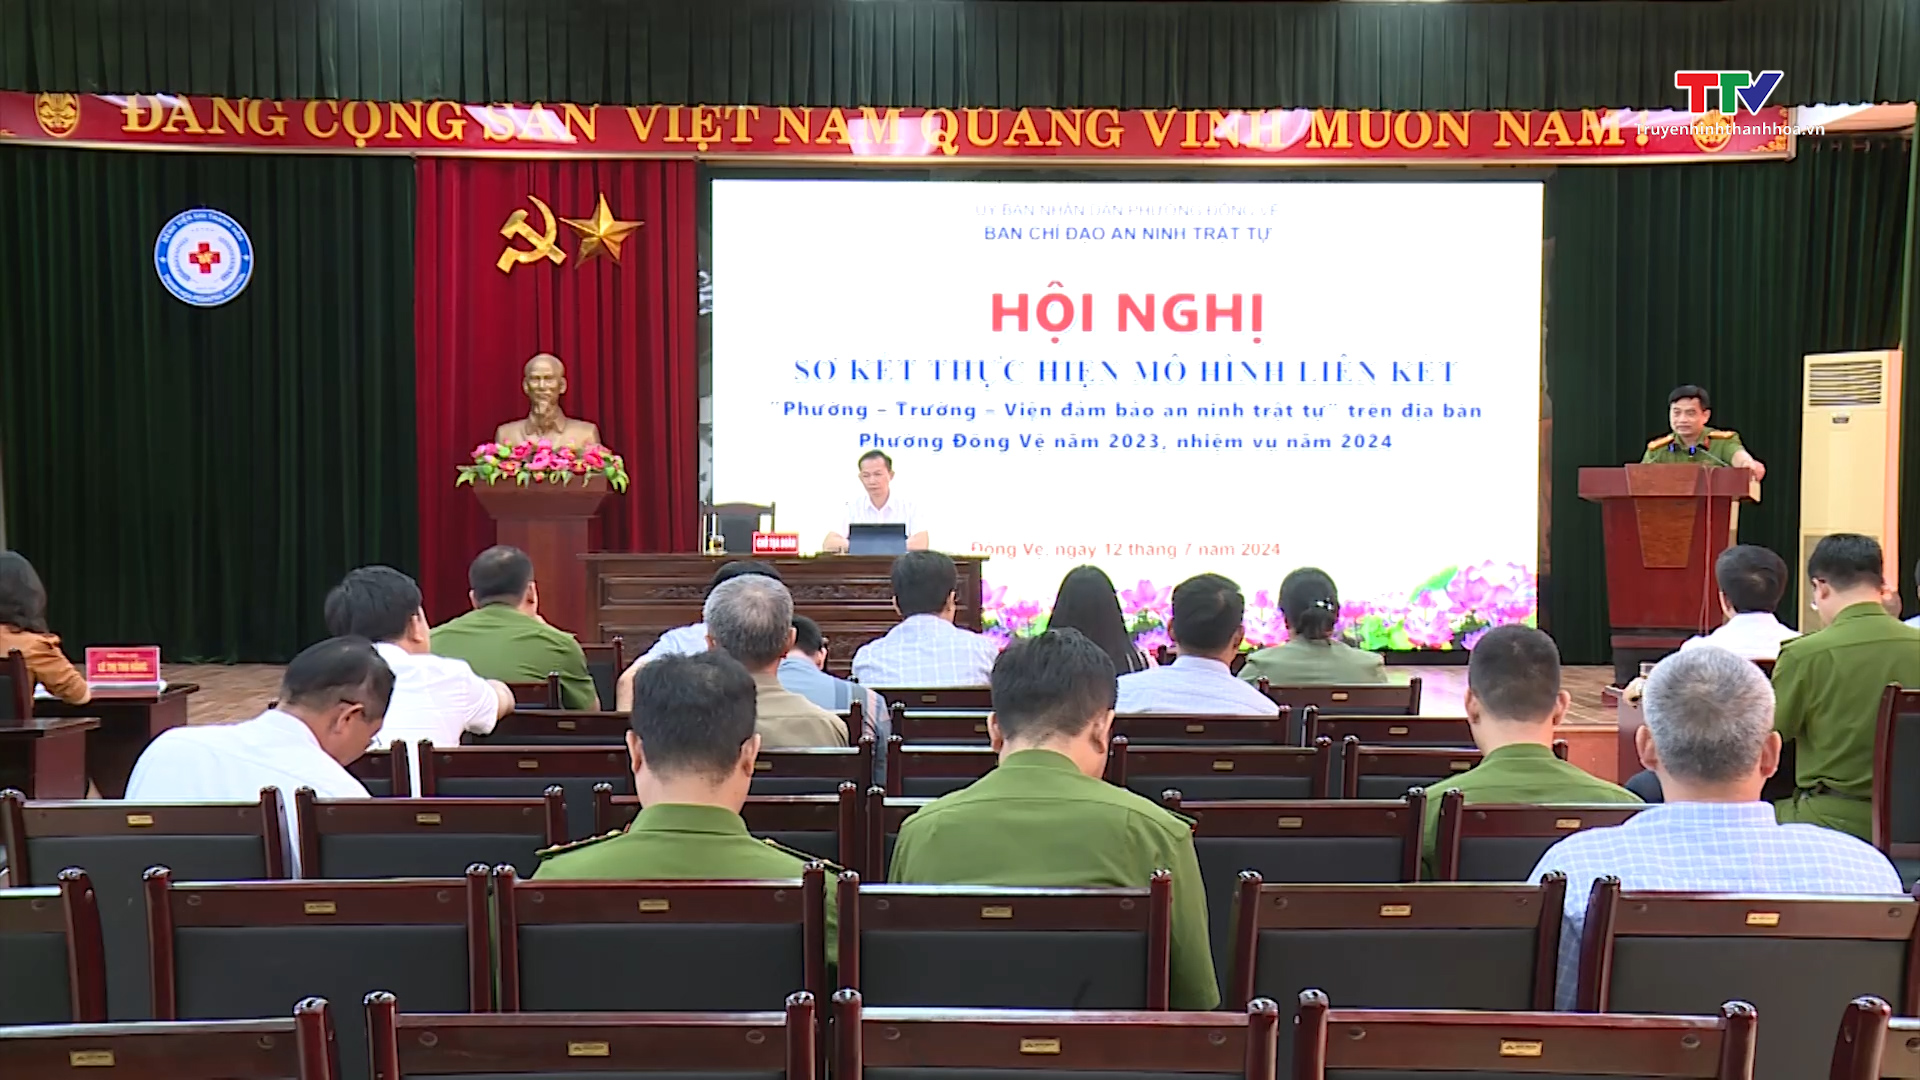 Tin tổng hợp hoạt động chính trị, kinh tế, văn hóa, xã hội trên địa bàn thành phố Thanh Hóa ngày 17/7/2024- Ảnh 6.